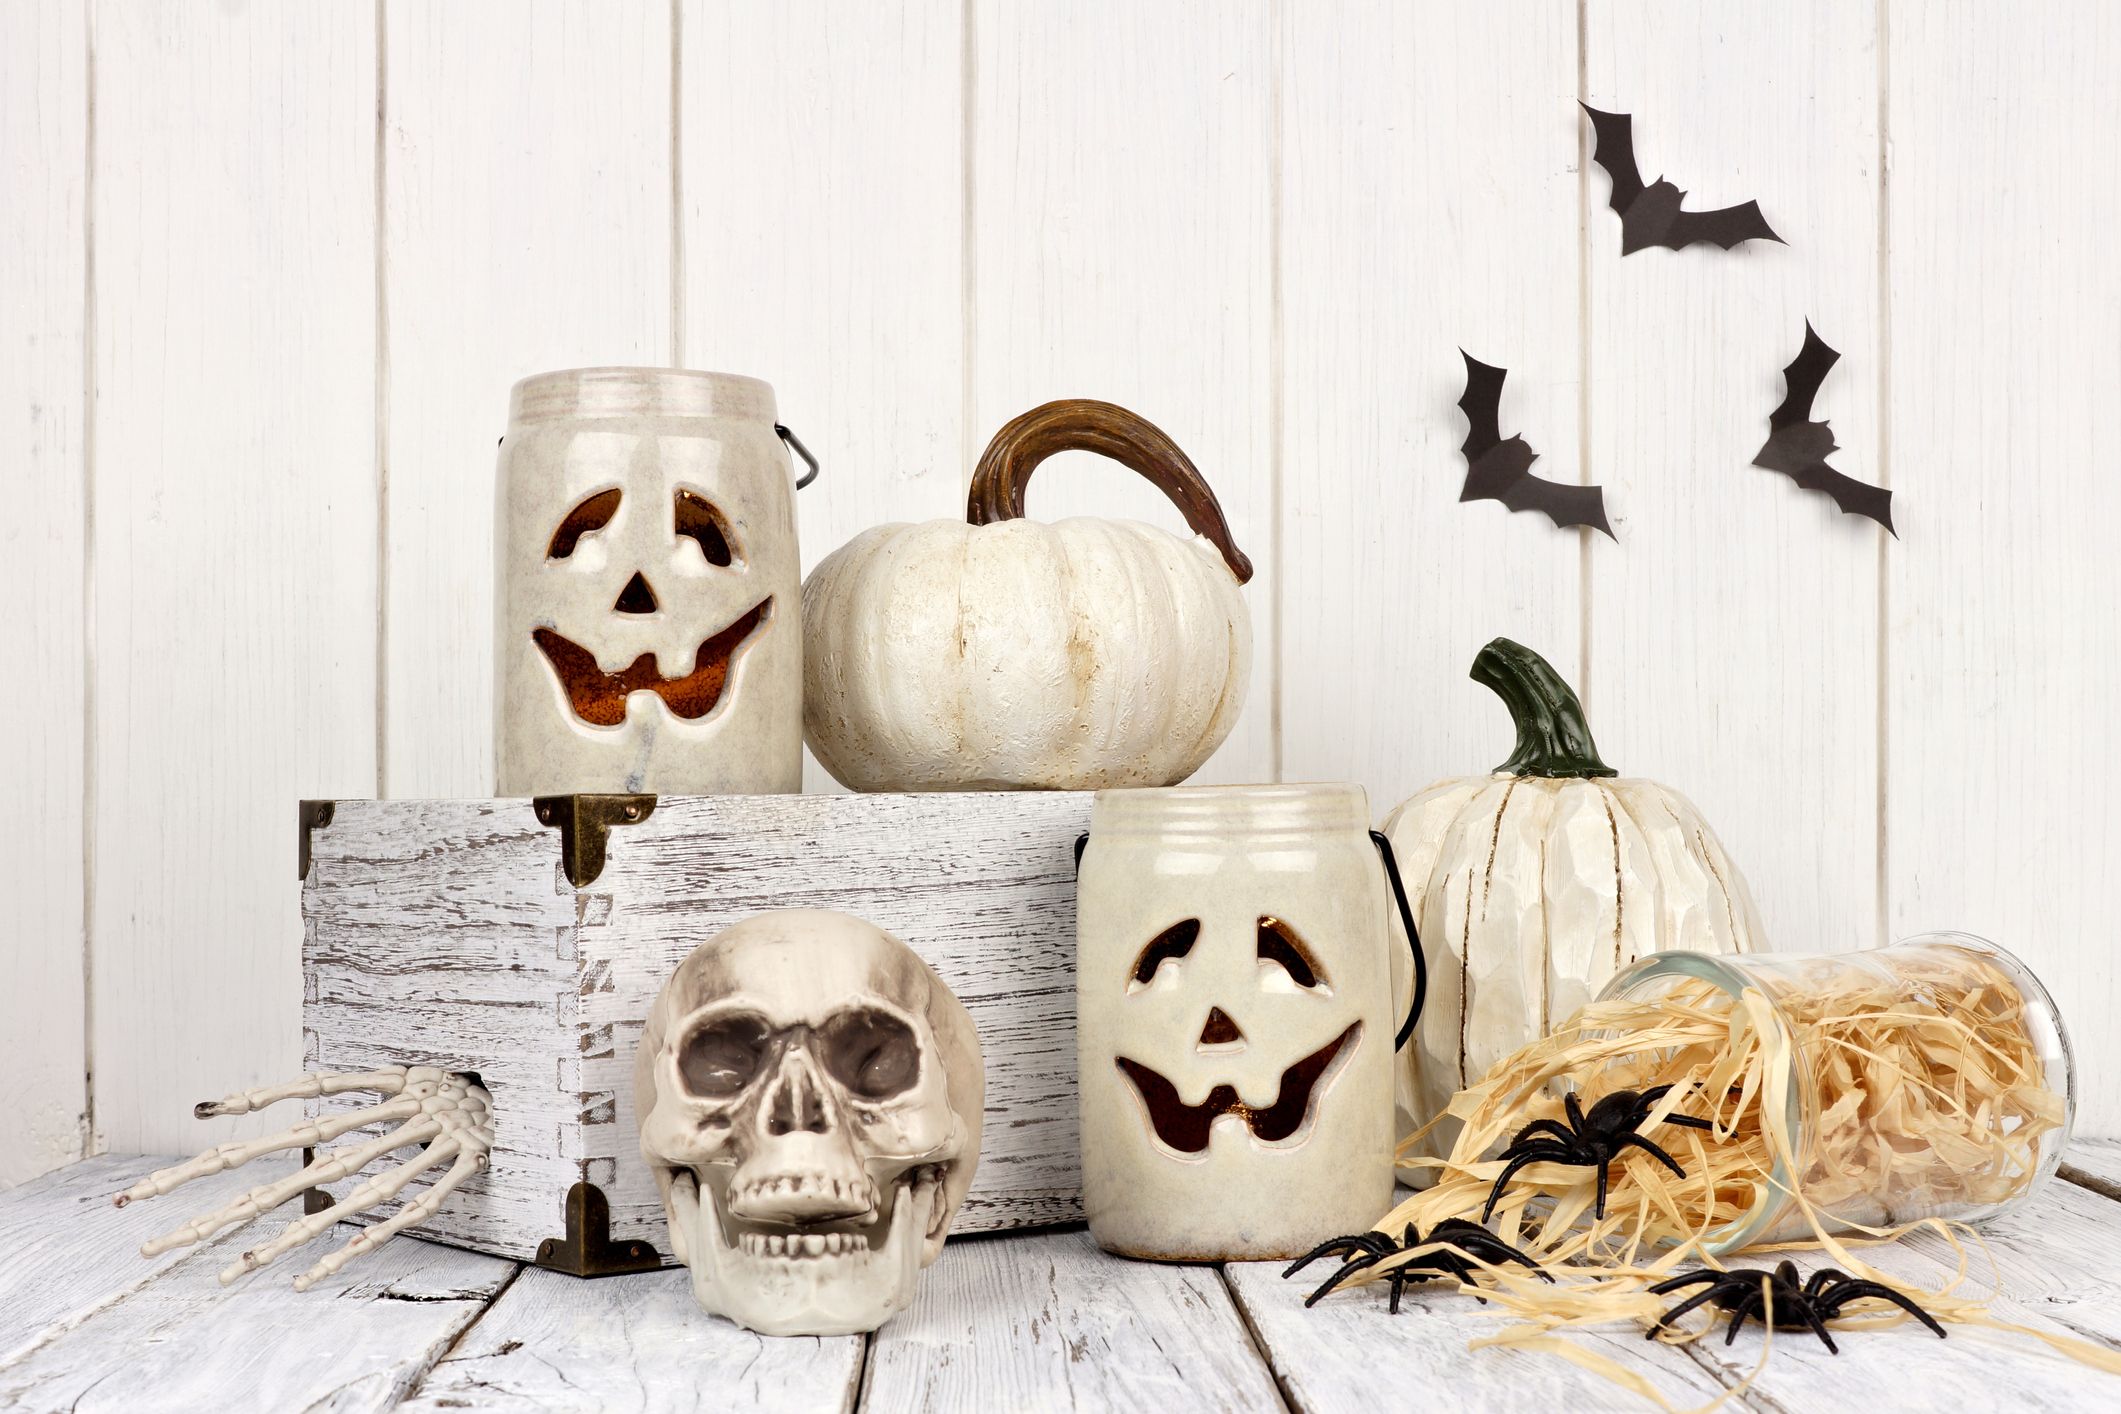 36 Halloween Mason Jars - Halloween Craft Ideas Using Mason Jars